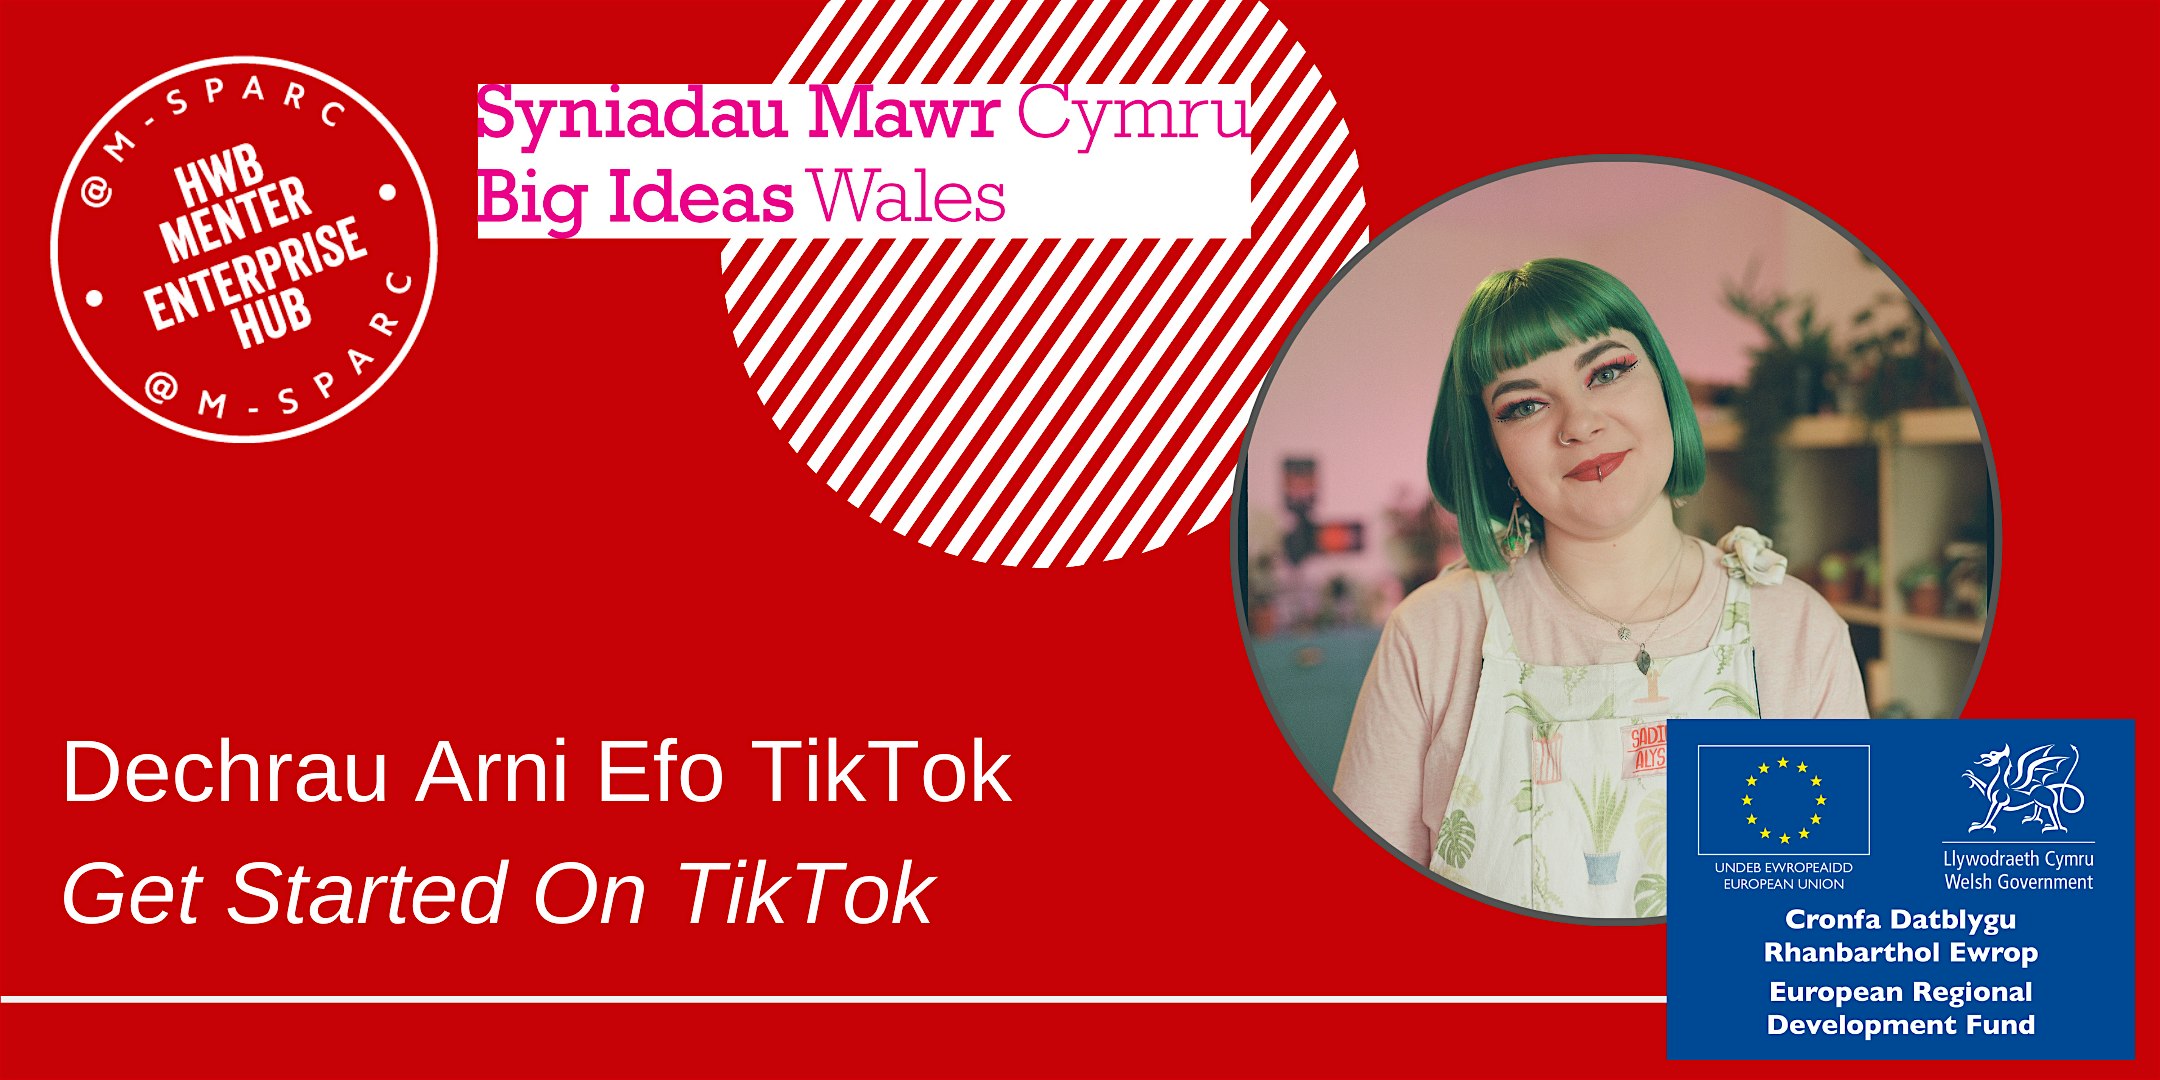 IN PERSON - Dechrau Arni Efo TikTok // Get Started On TikTok